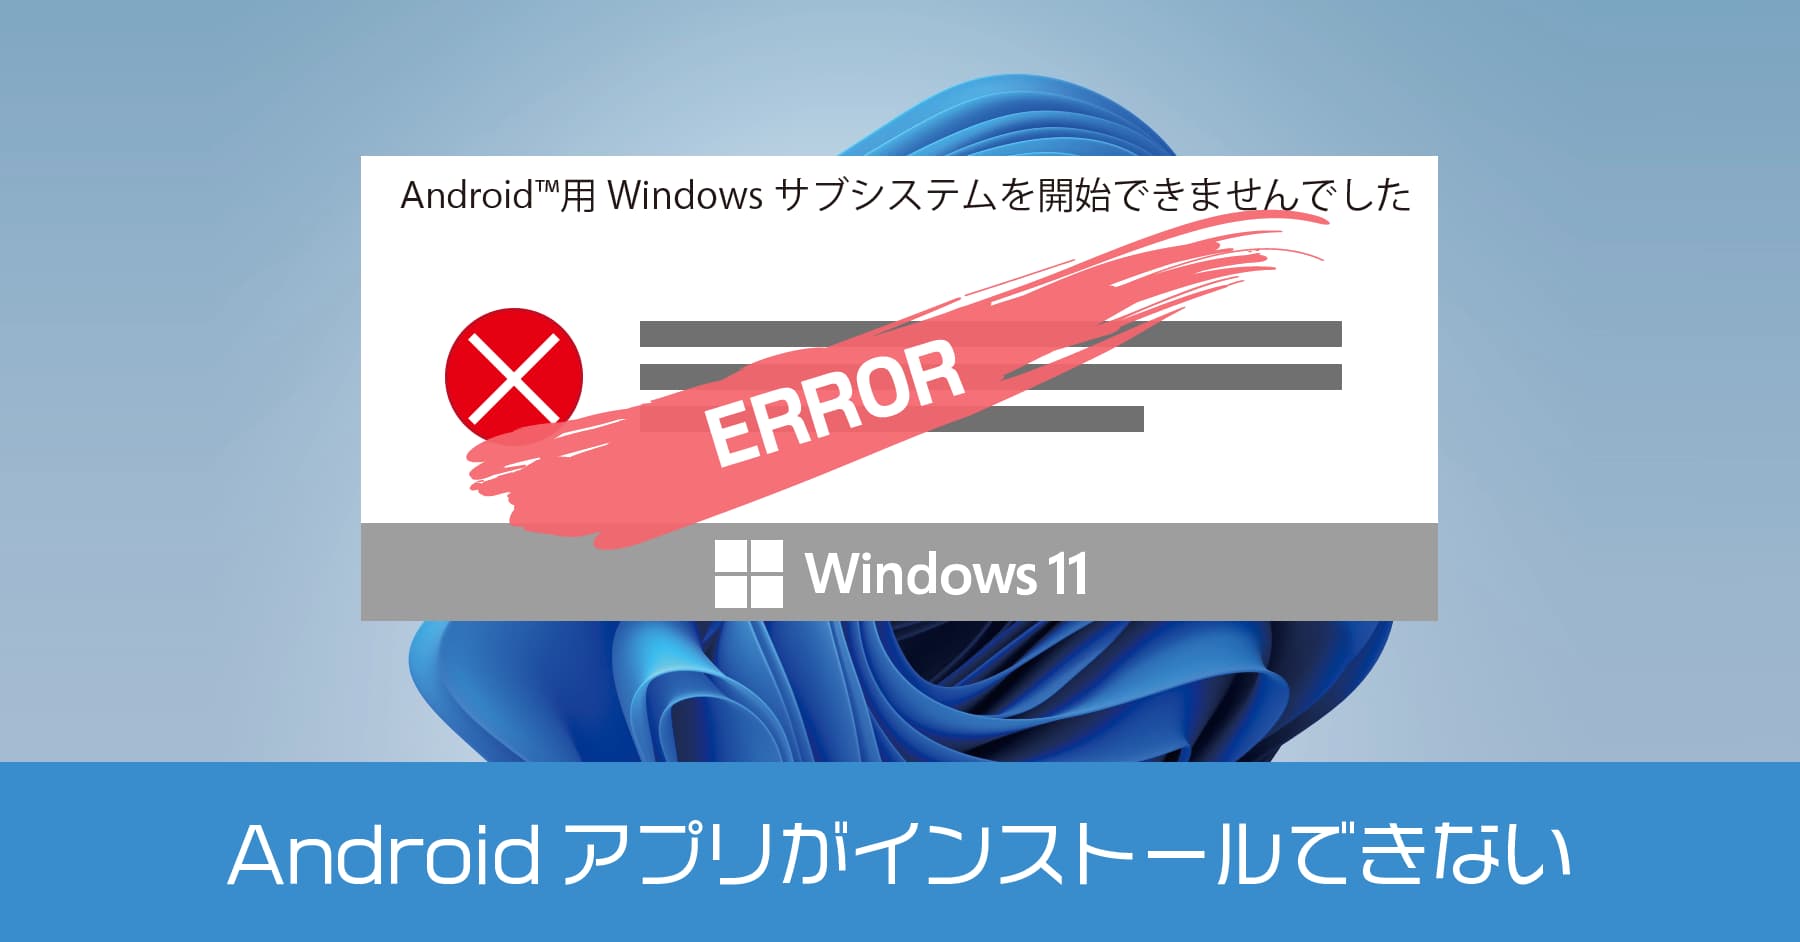 Windows 11 でAndroidの仮想マシンプラットフォームに関するエラーを解消する方法